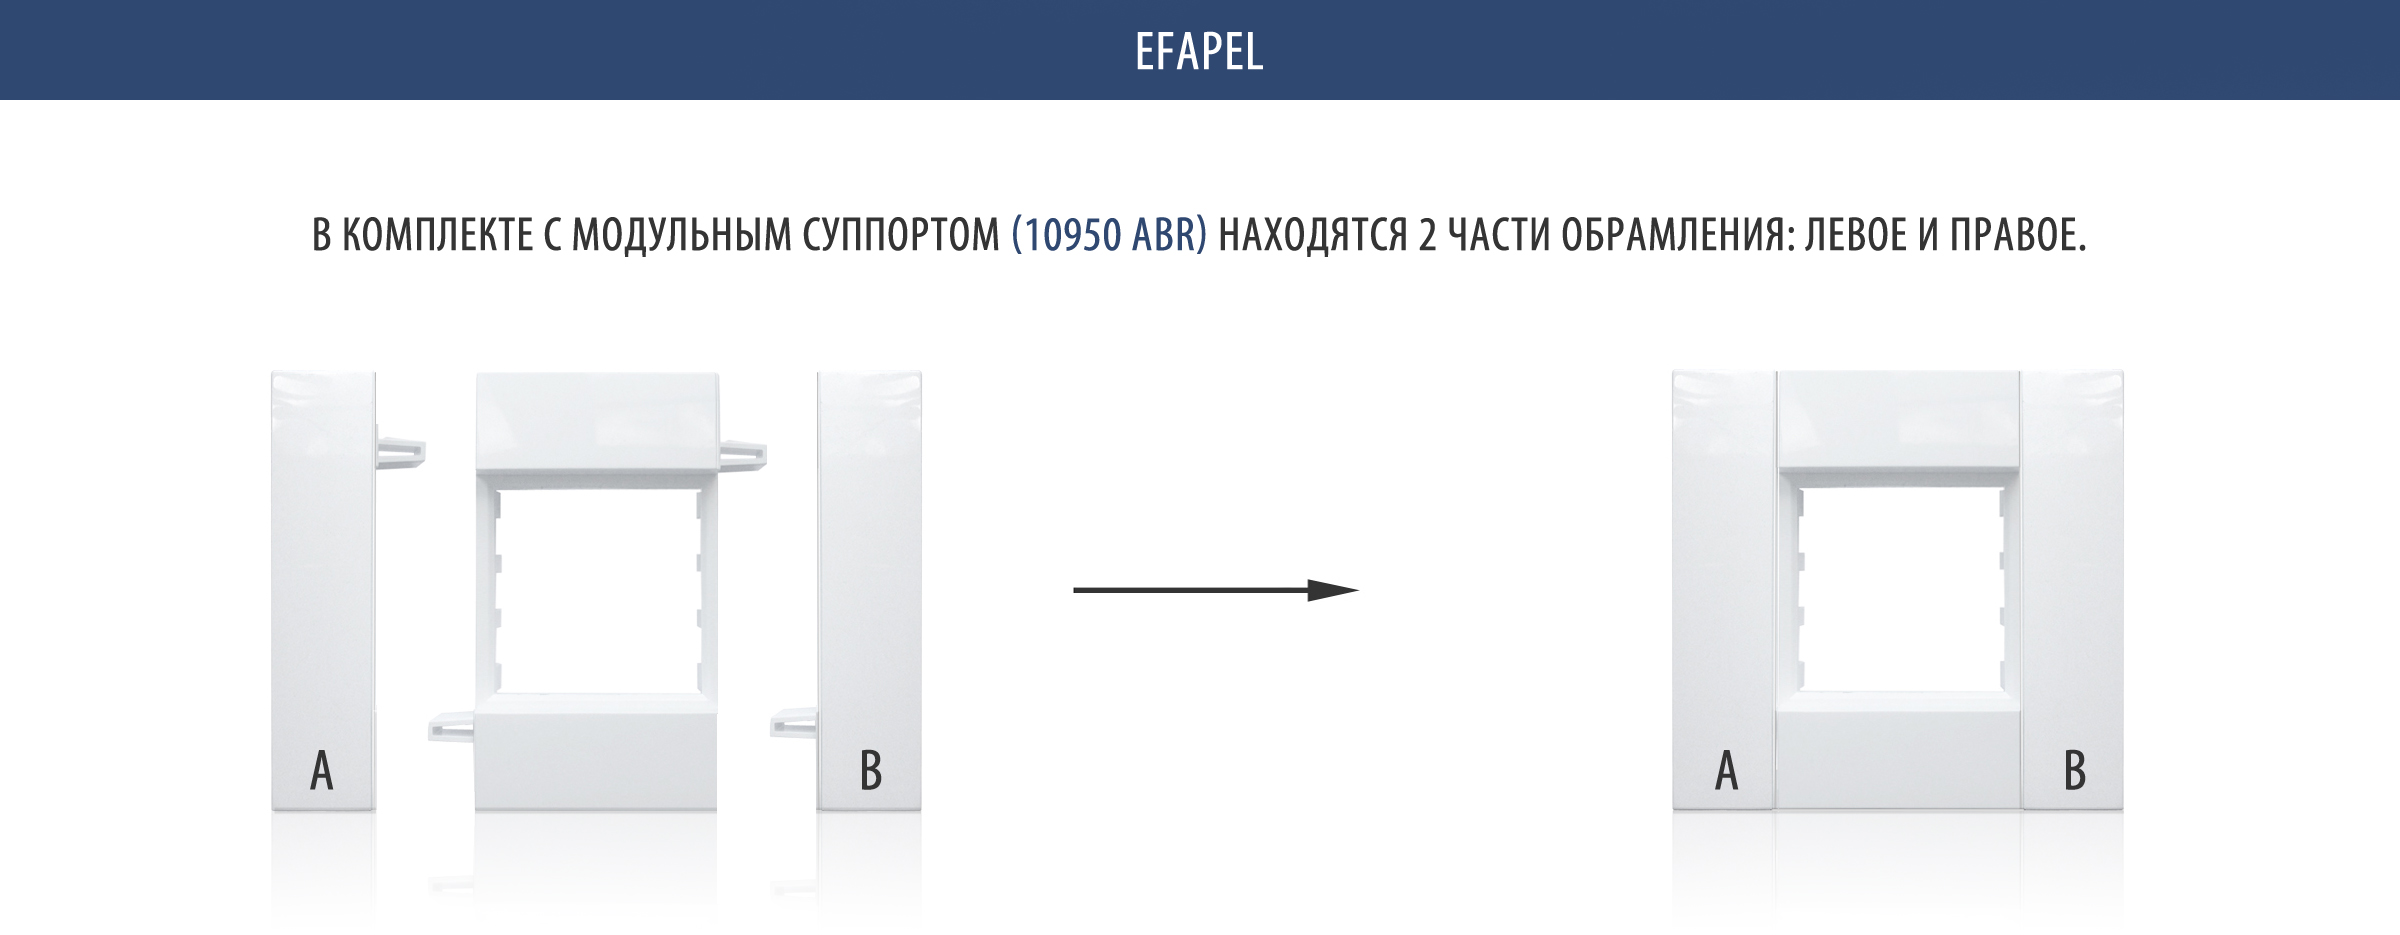 Efapel 10950 ABR модульный суппорт